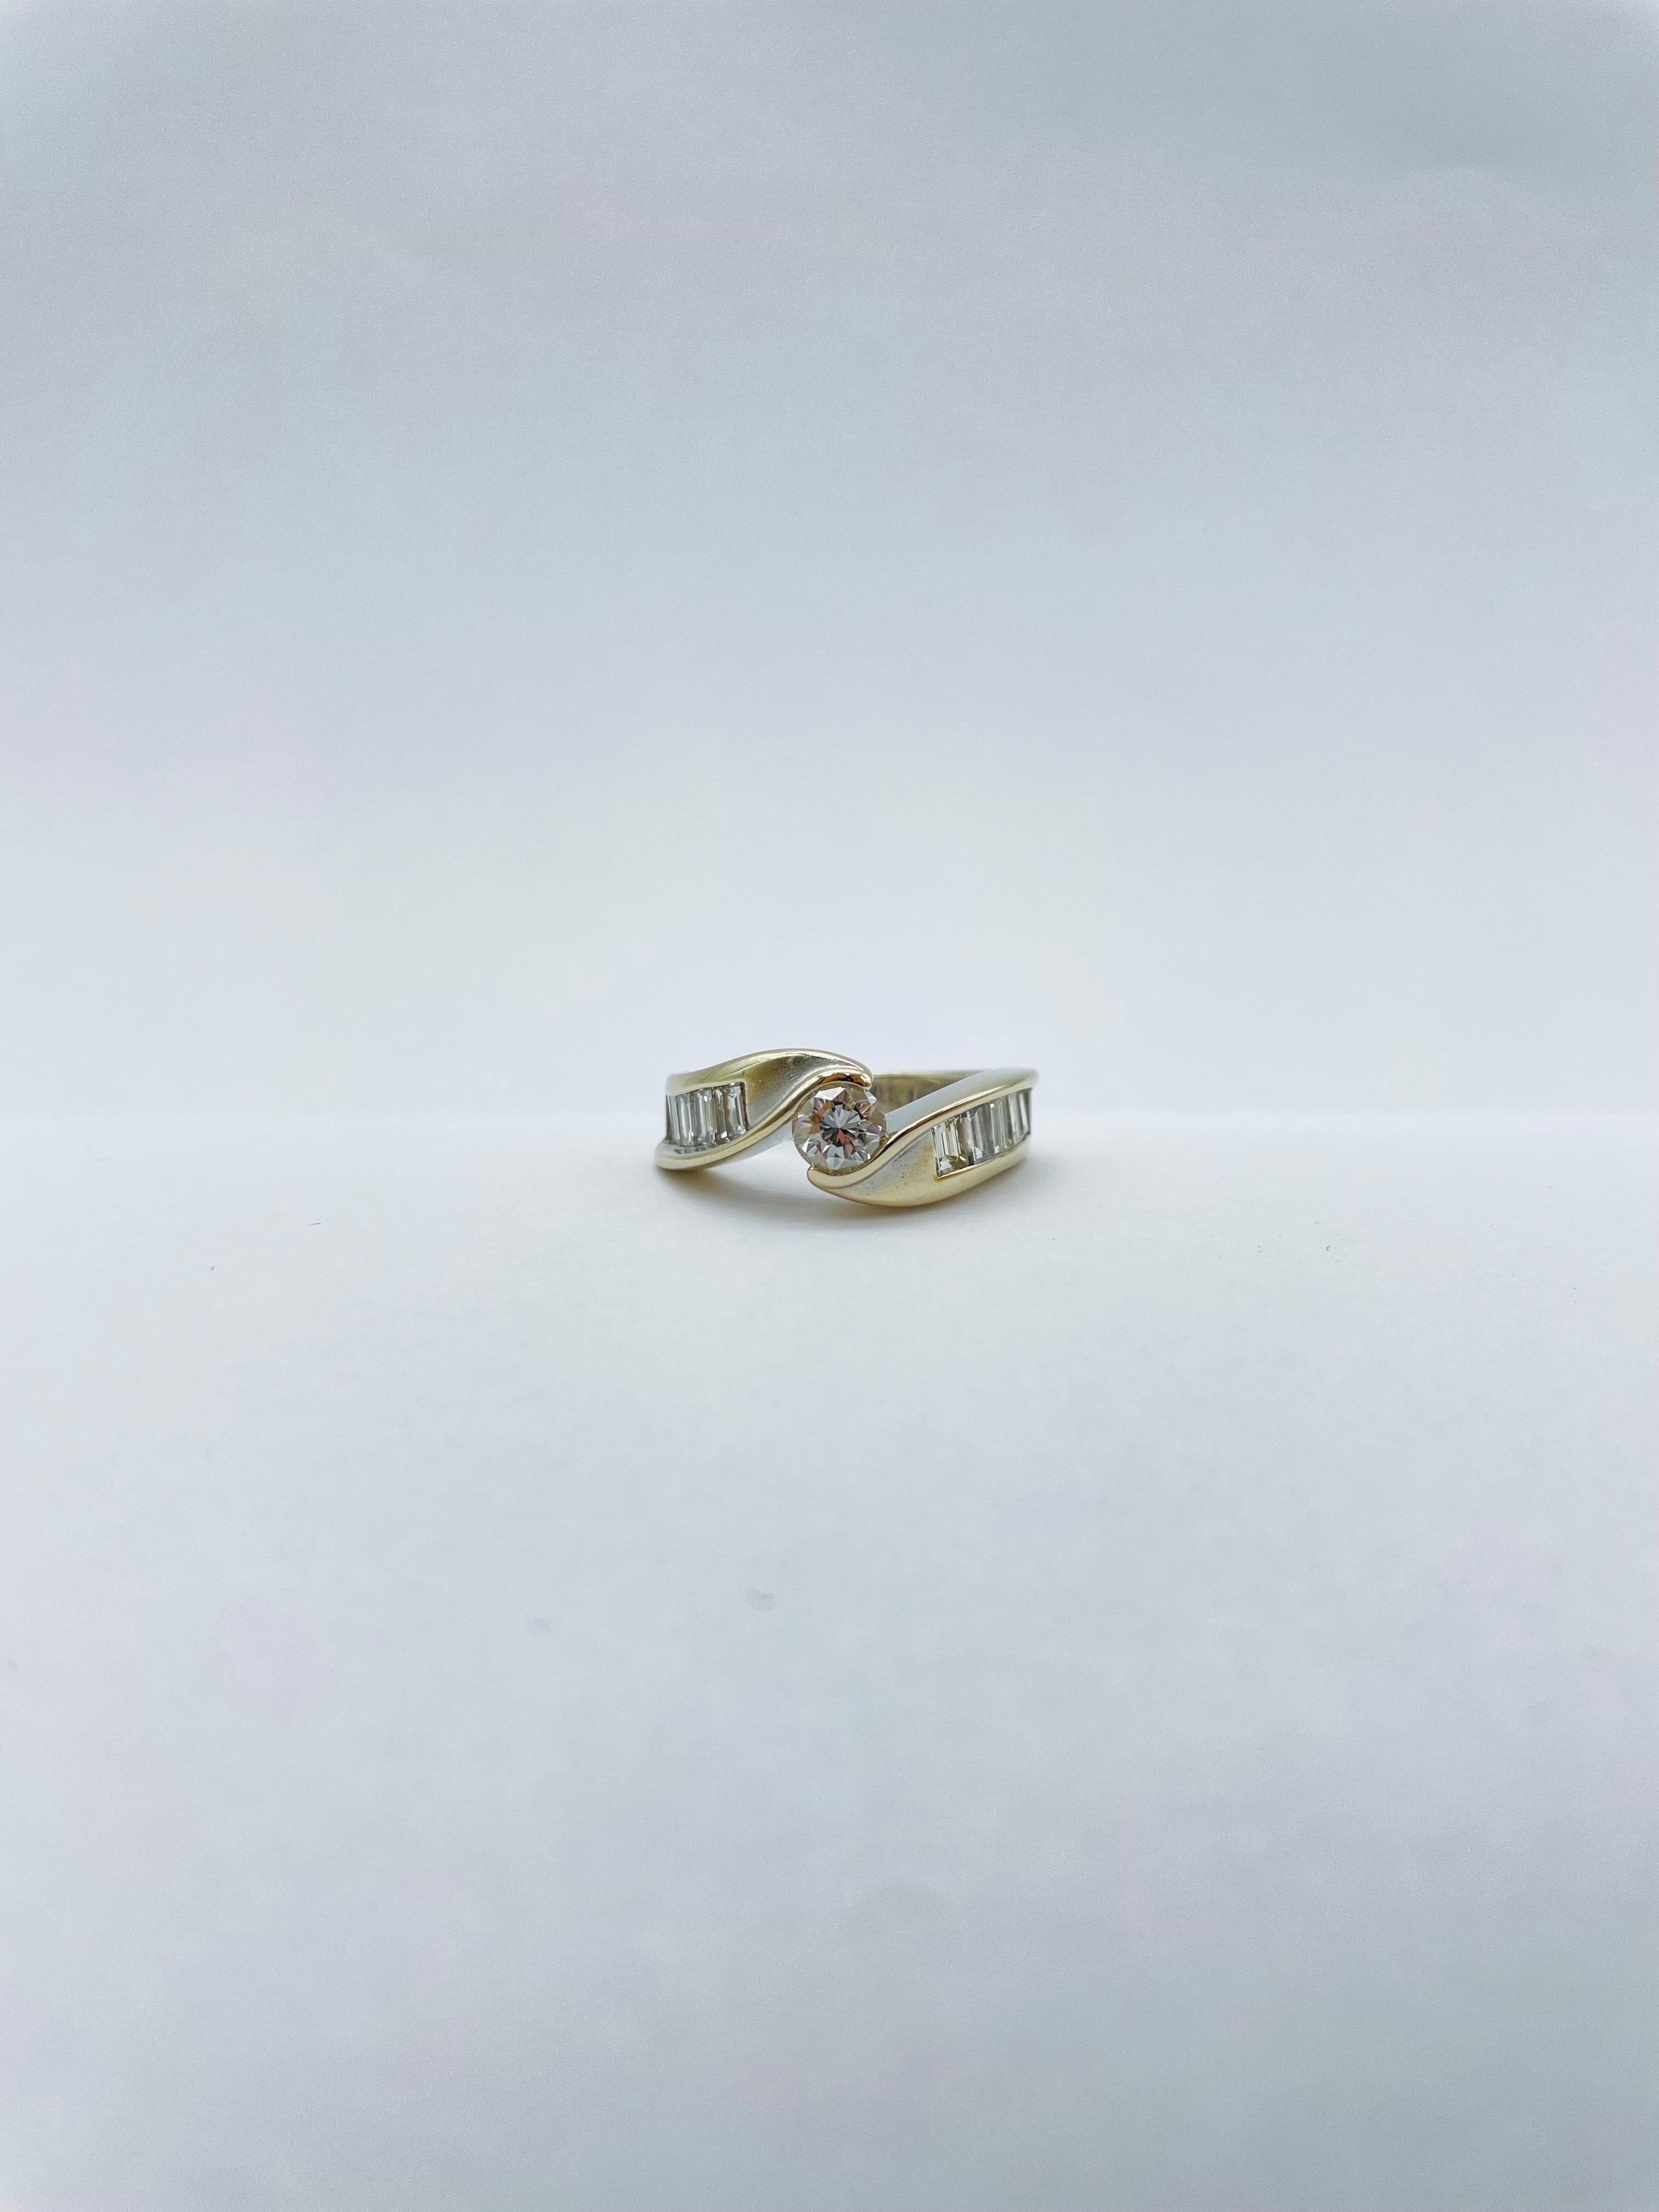 Einzigartiger Ring aus 18 Karat Gold, 0,50 Karat Diamant und 8 Baguette, Weiß-/Gelbgold.

Montierter Klemmring. Zentraler Diamant ca. 0,50 Karat. Darüber hinaus ist jeder mit 5 Baguettesteinen (insgesamt 1,5 Karat) flankiert. Zweifarbiges Ringband